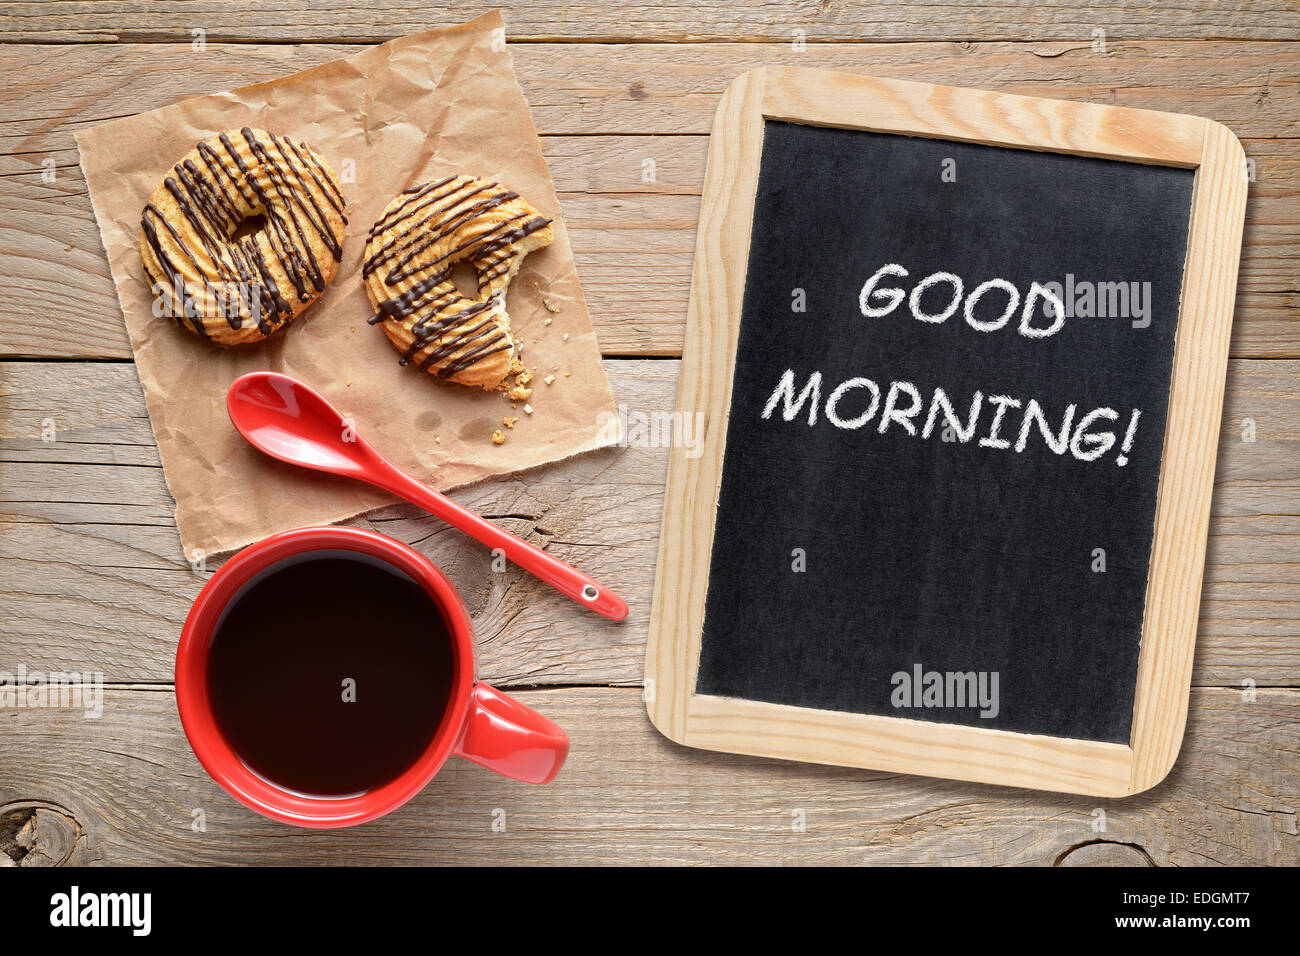 Tasse Kaffee, Kekse und kleine Tafel mit guten Morgen! Satz Stockfoto